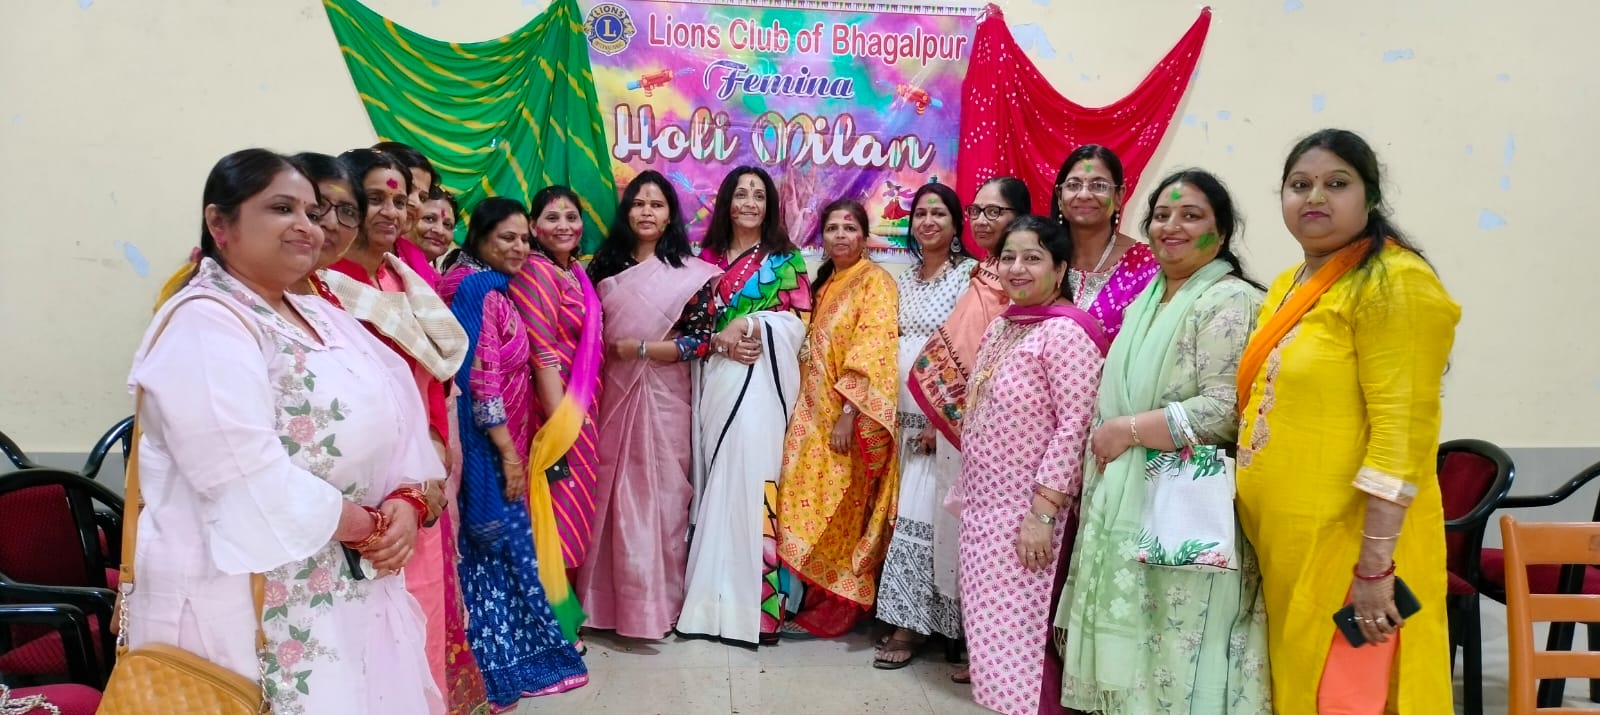 लायंस क्लब भागलपुर फेमिना ने भागलपुर के स्थानीय क्लब में किया होली मिलन समारोह का आयोजन | New India Times